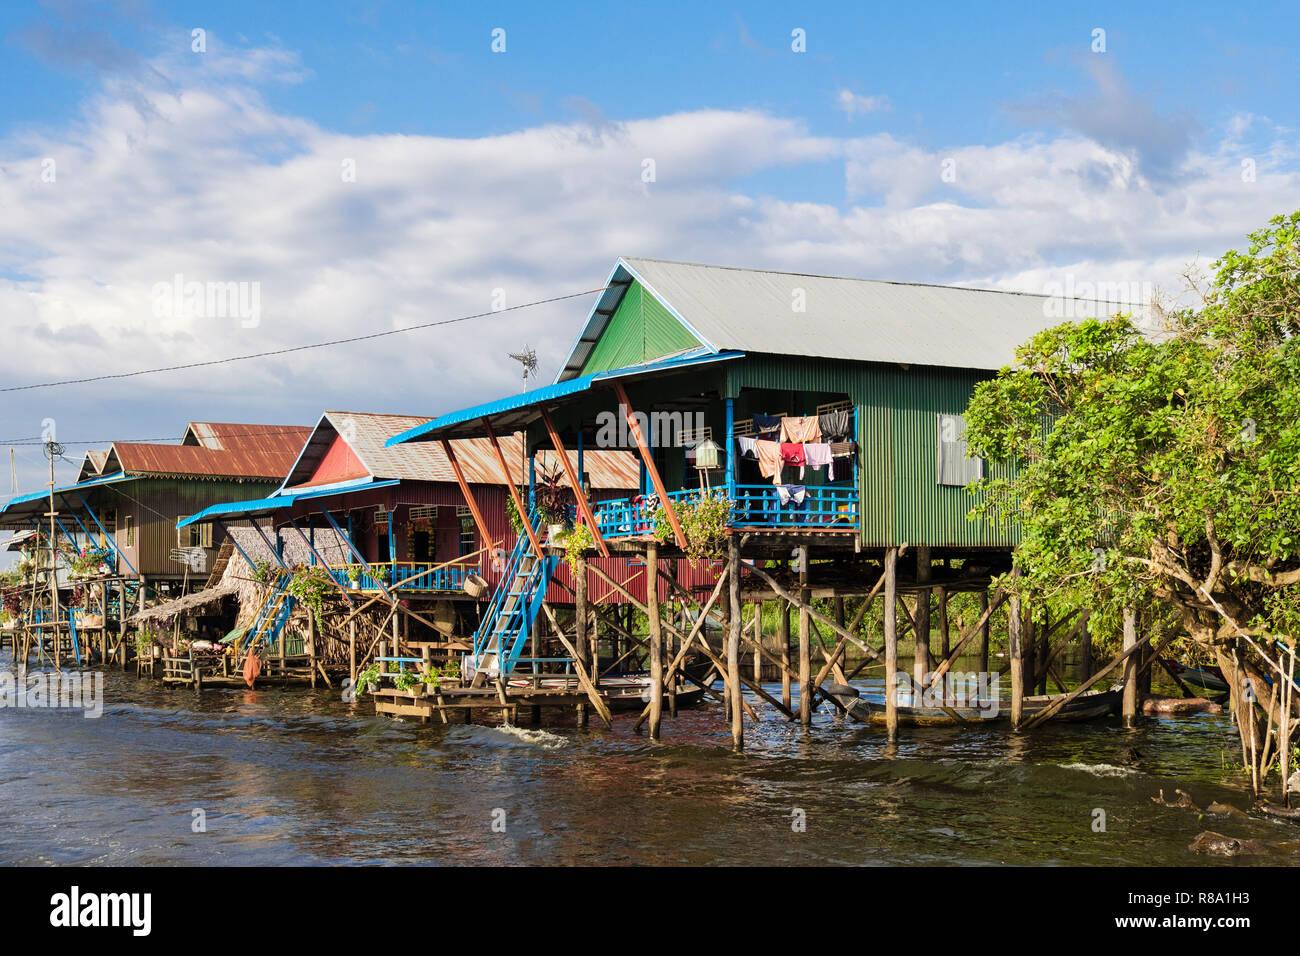 Maisons sur pilotis au village de pêcheurs flottant au lac Tonle Sap. Kampong Phluk, province de Siem Reap, Cambodge, en Asie du sud-est Banque D'Images